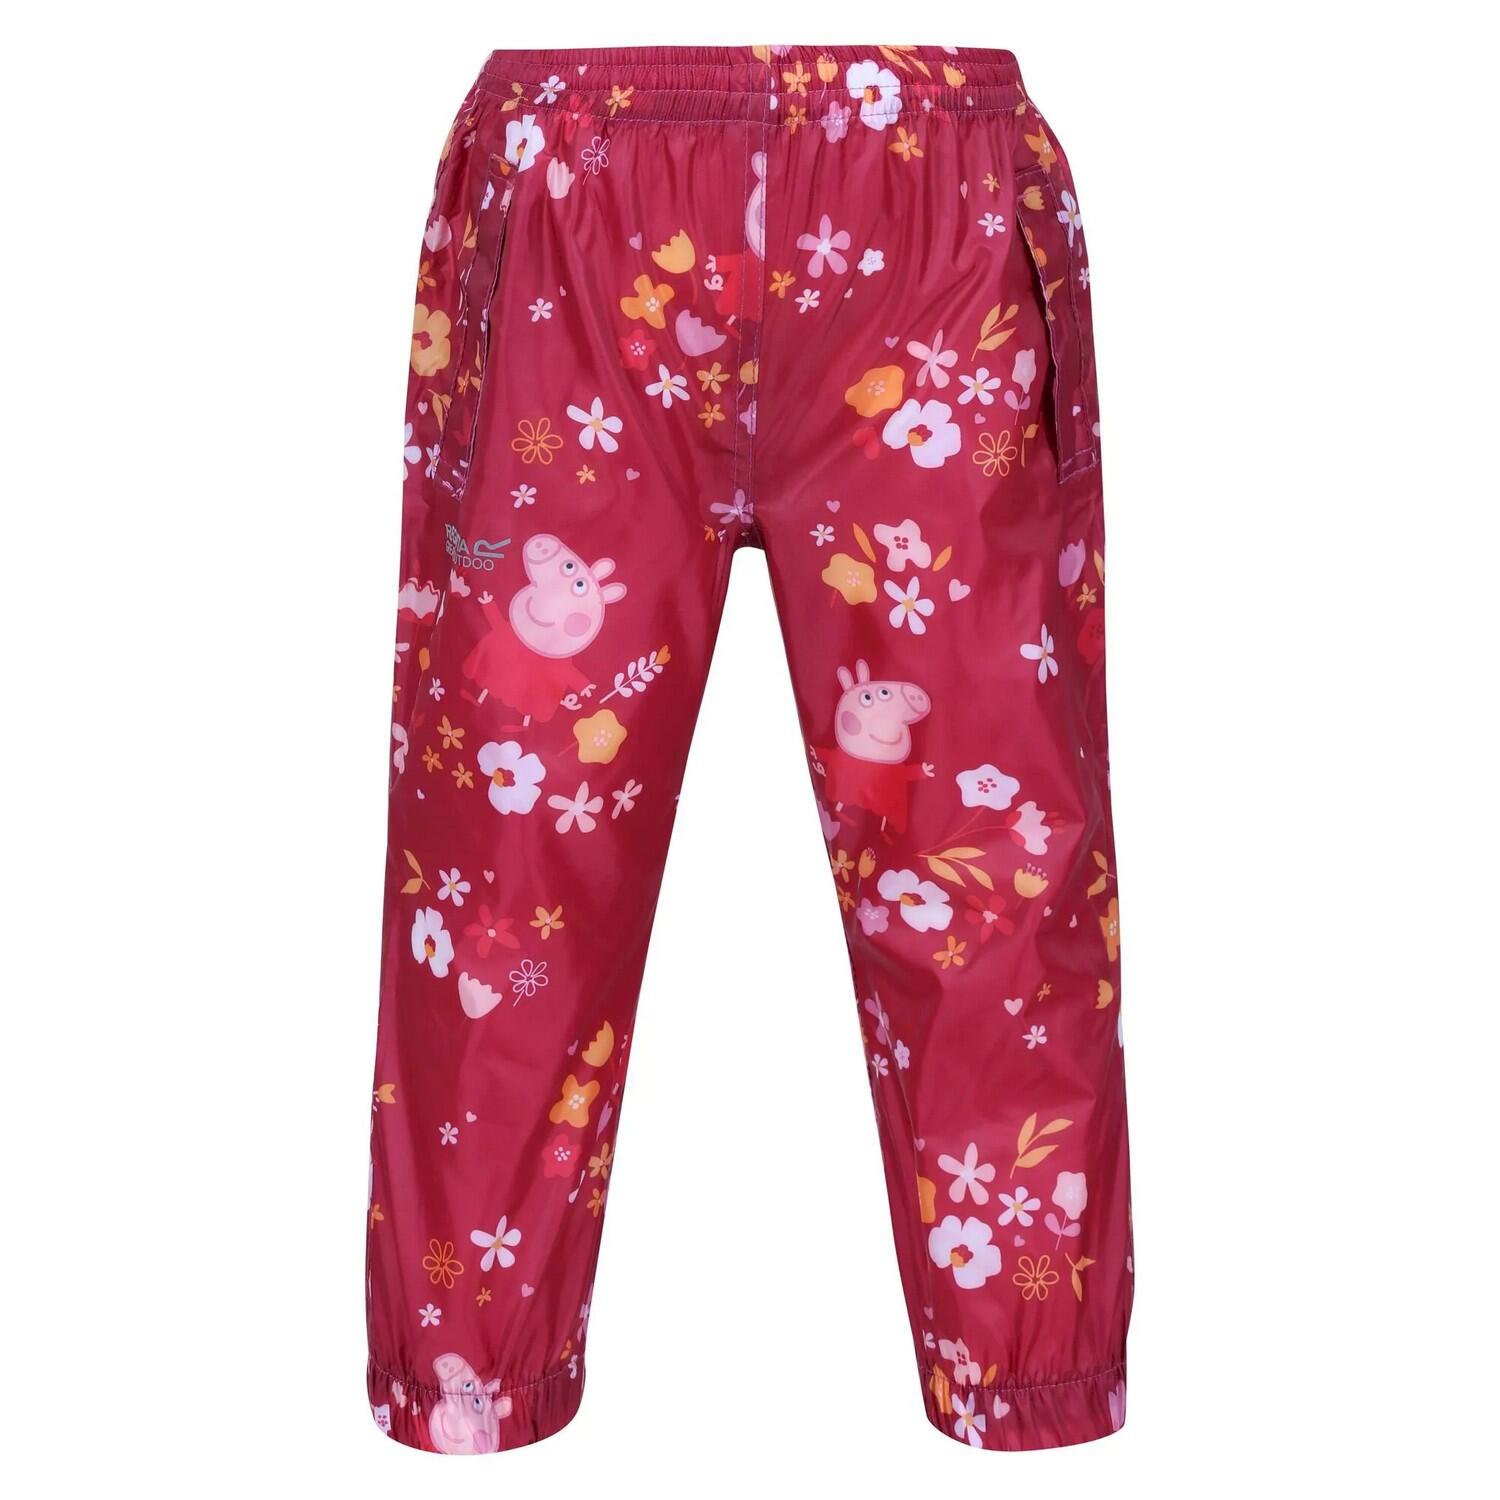 REGATTA Childrens/Kids Floral Peppa Pig Packaway Waterproof Trousers (Berry Pink)